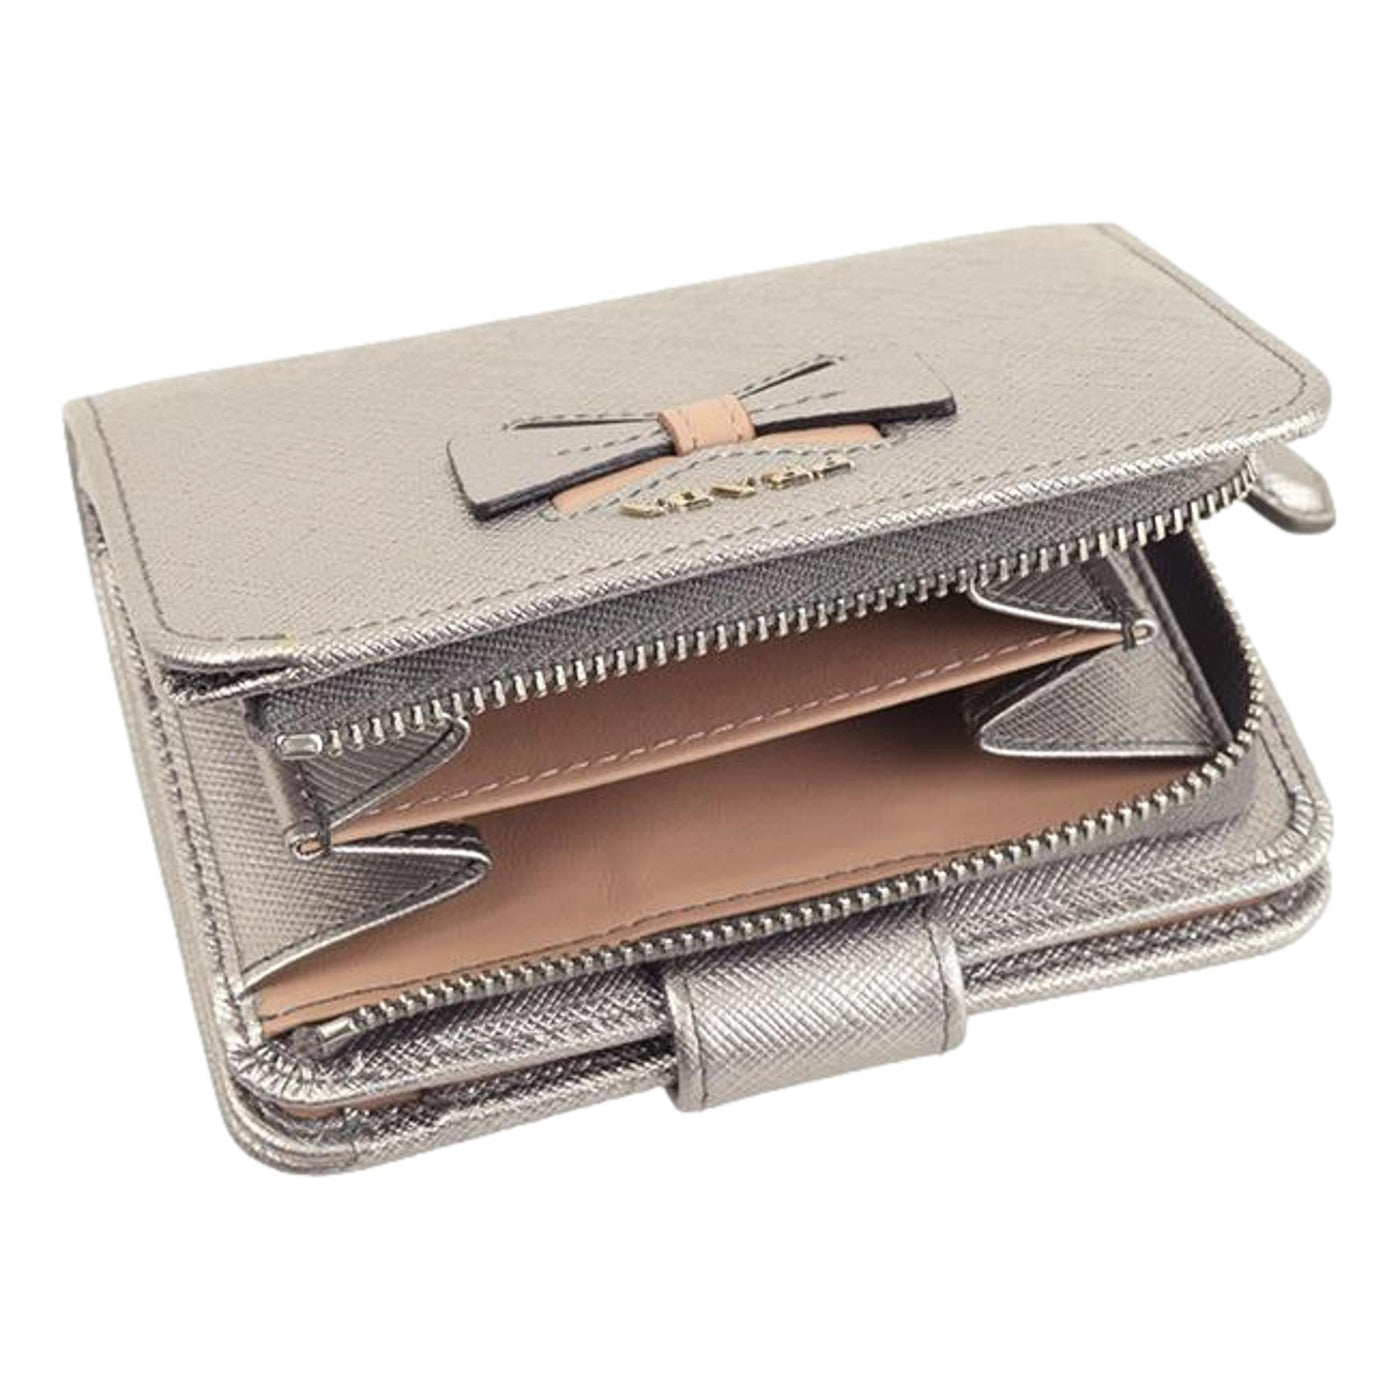 Prada Ribbon Saffiano Metallic Silver and Beige Leather Bifold Wallet - LUXURYMRKT